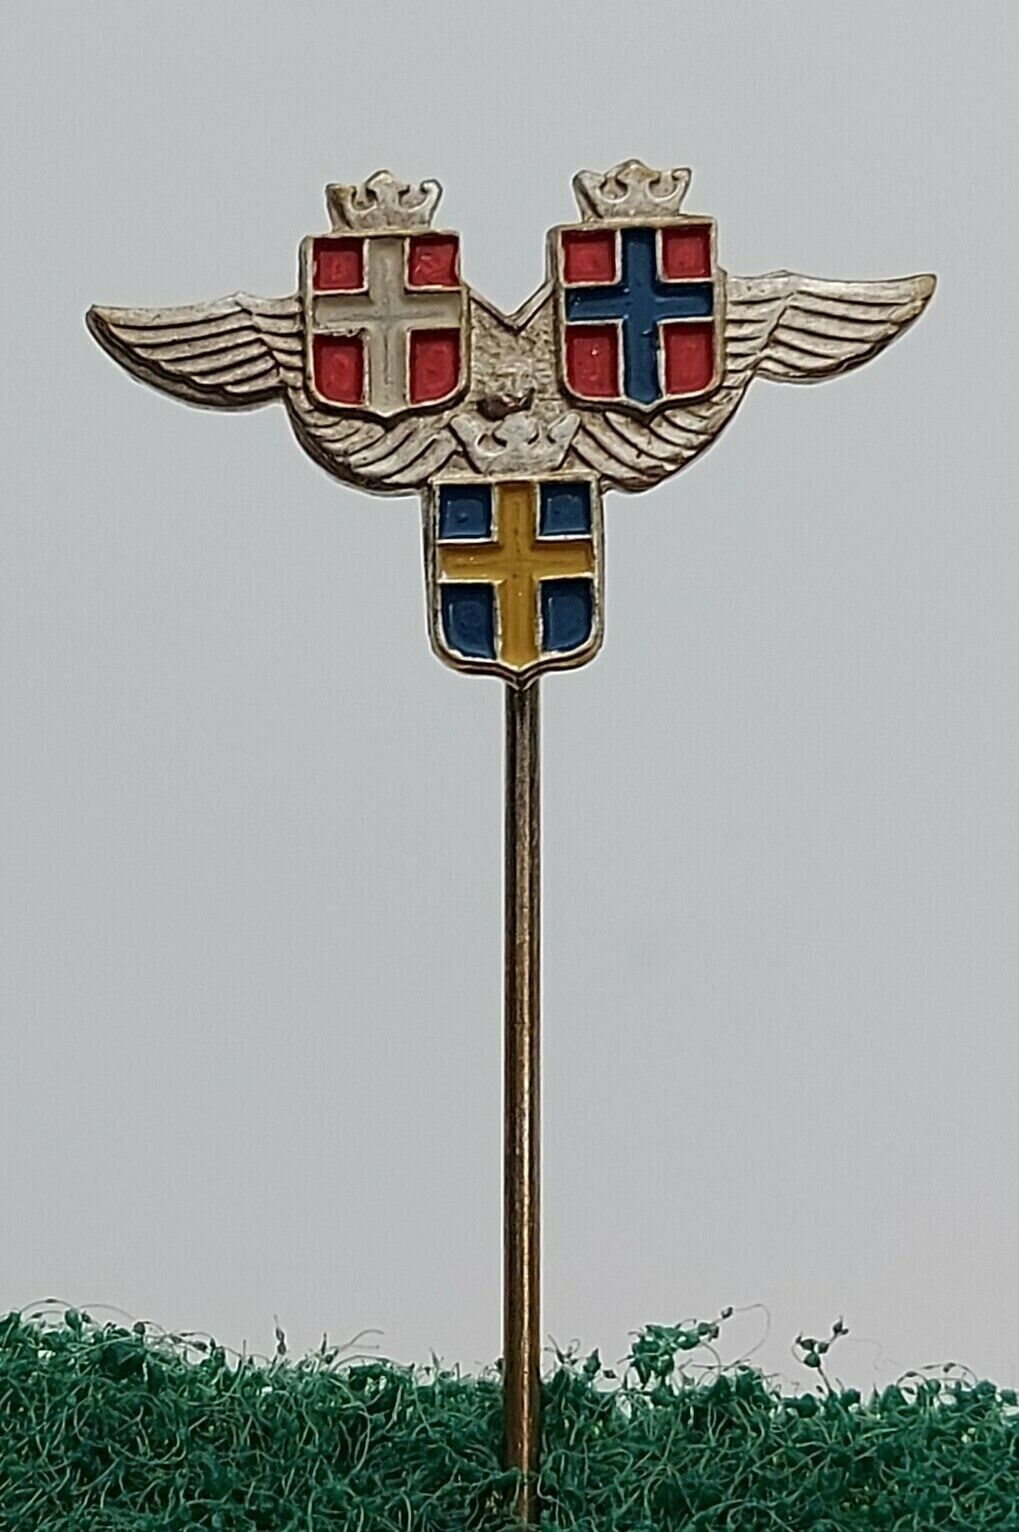 SAS - Scandinavian Airlines Sweden Norway Denmark, vintage pin badge lapel 